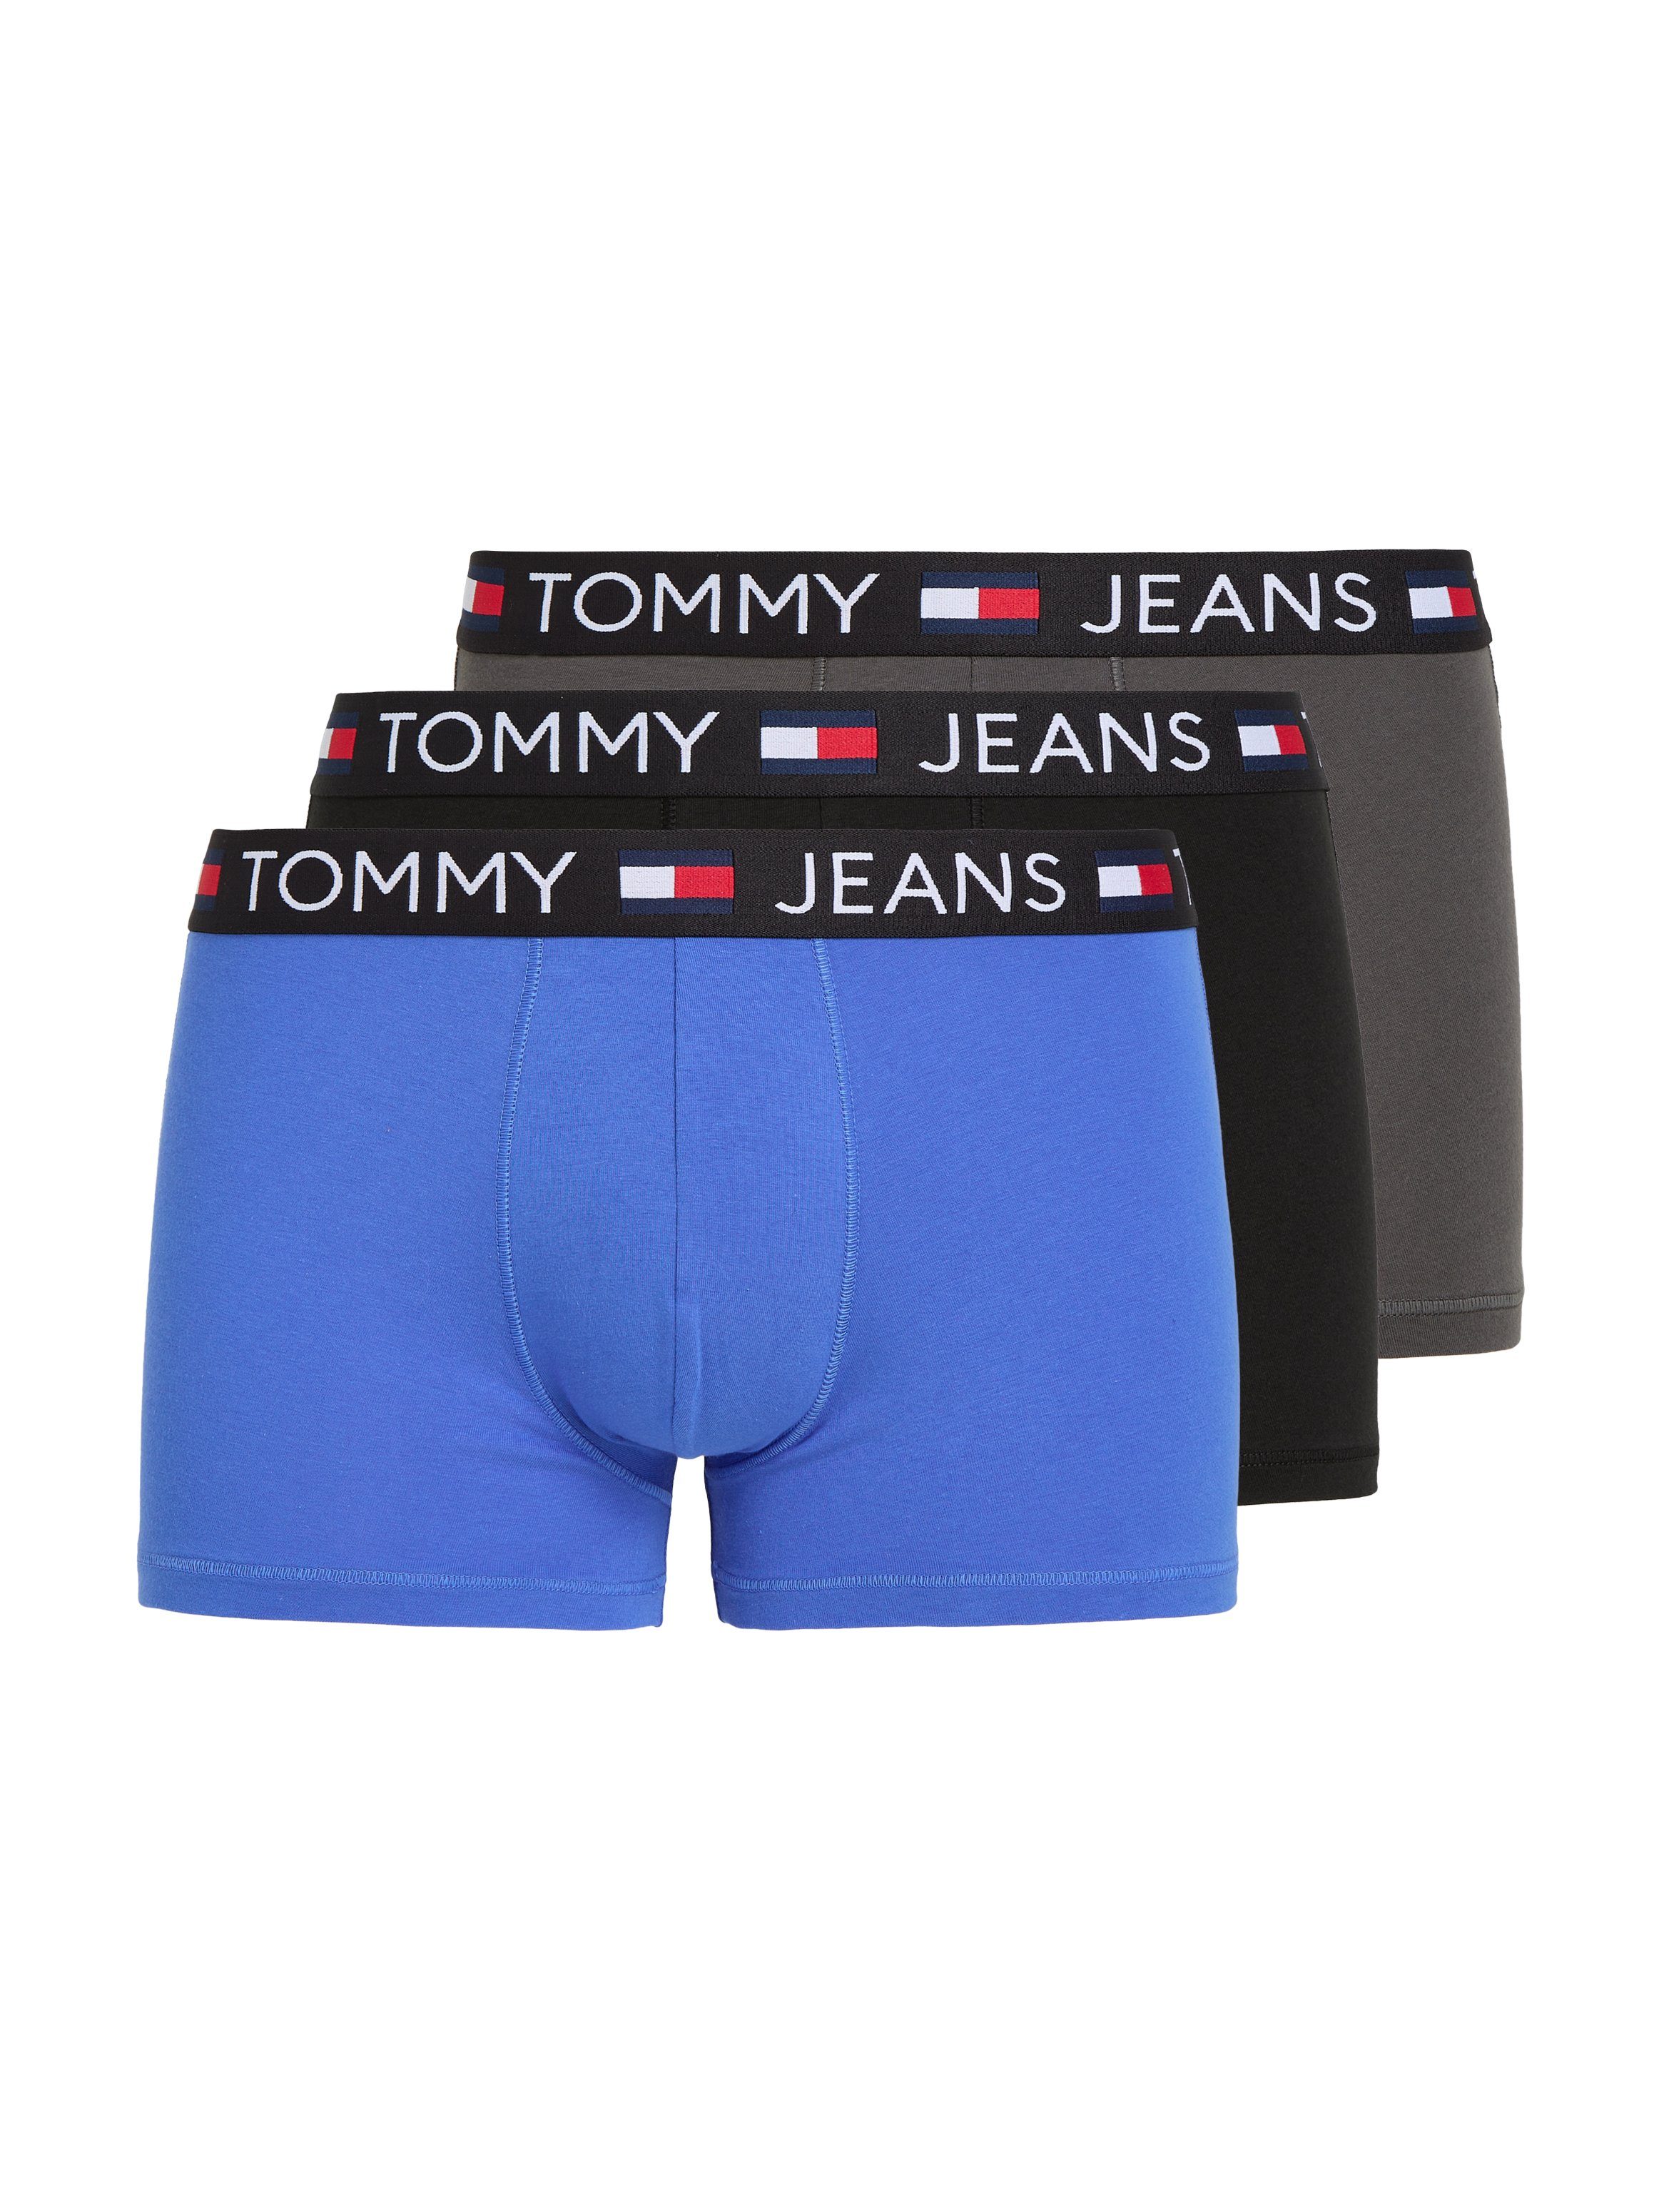 Tommy Hilfiger Unterhosen für Herren online kaufen | OTTO